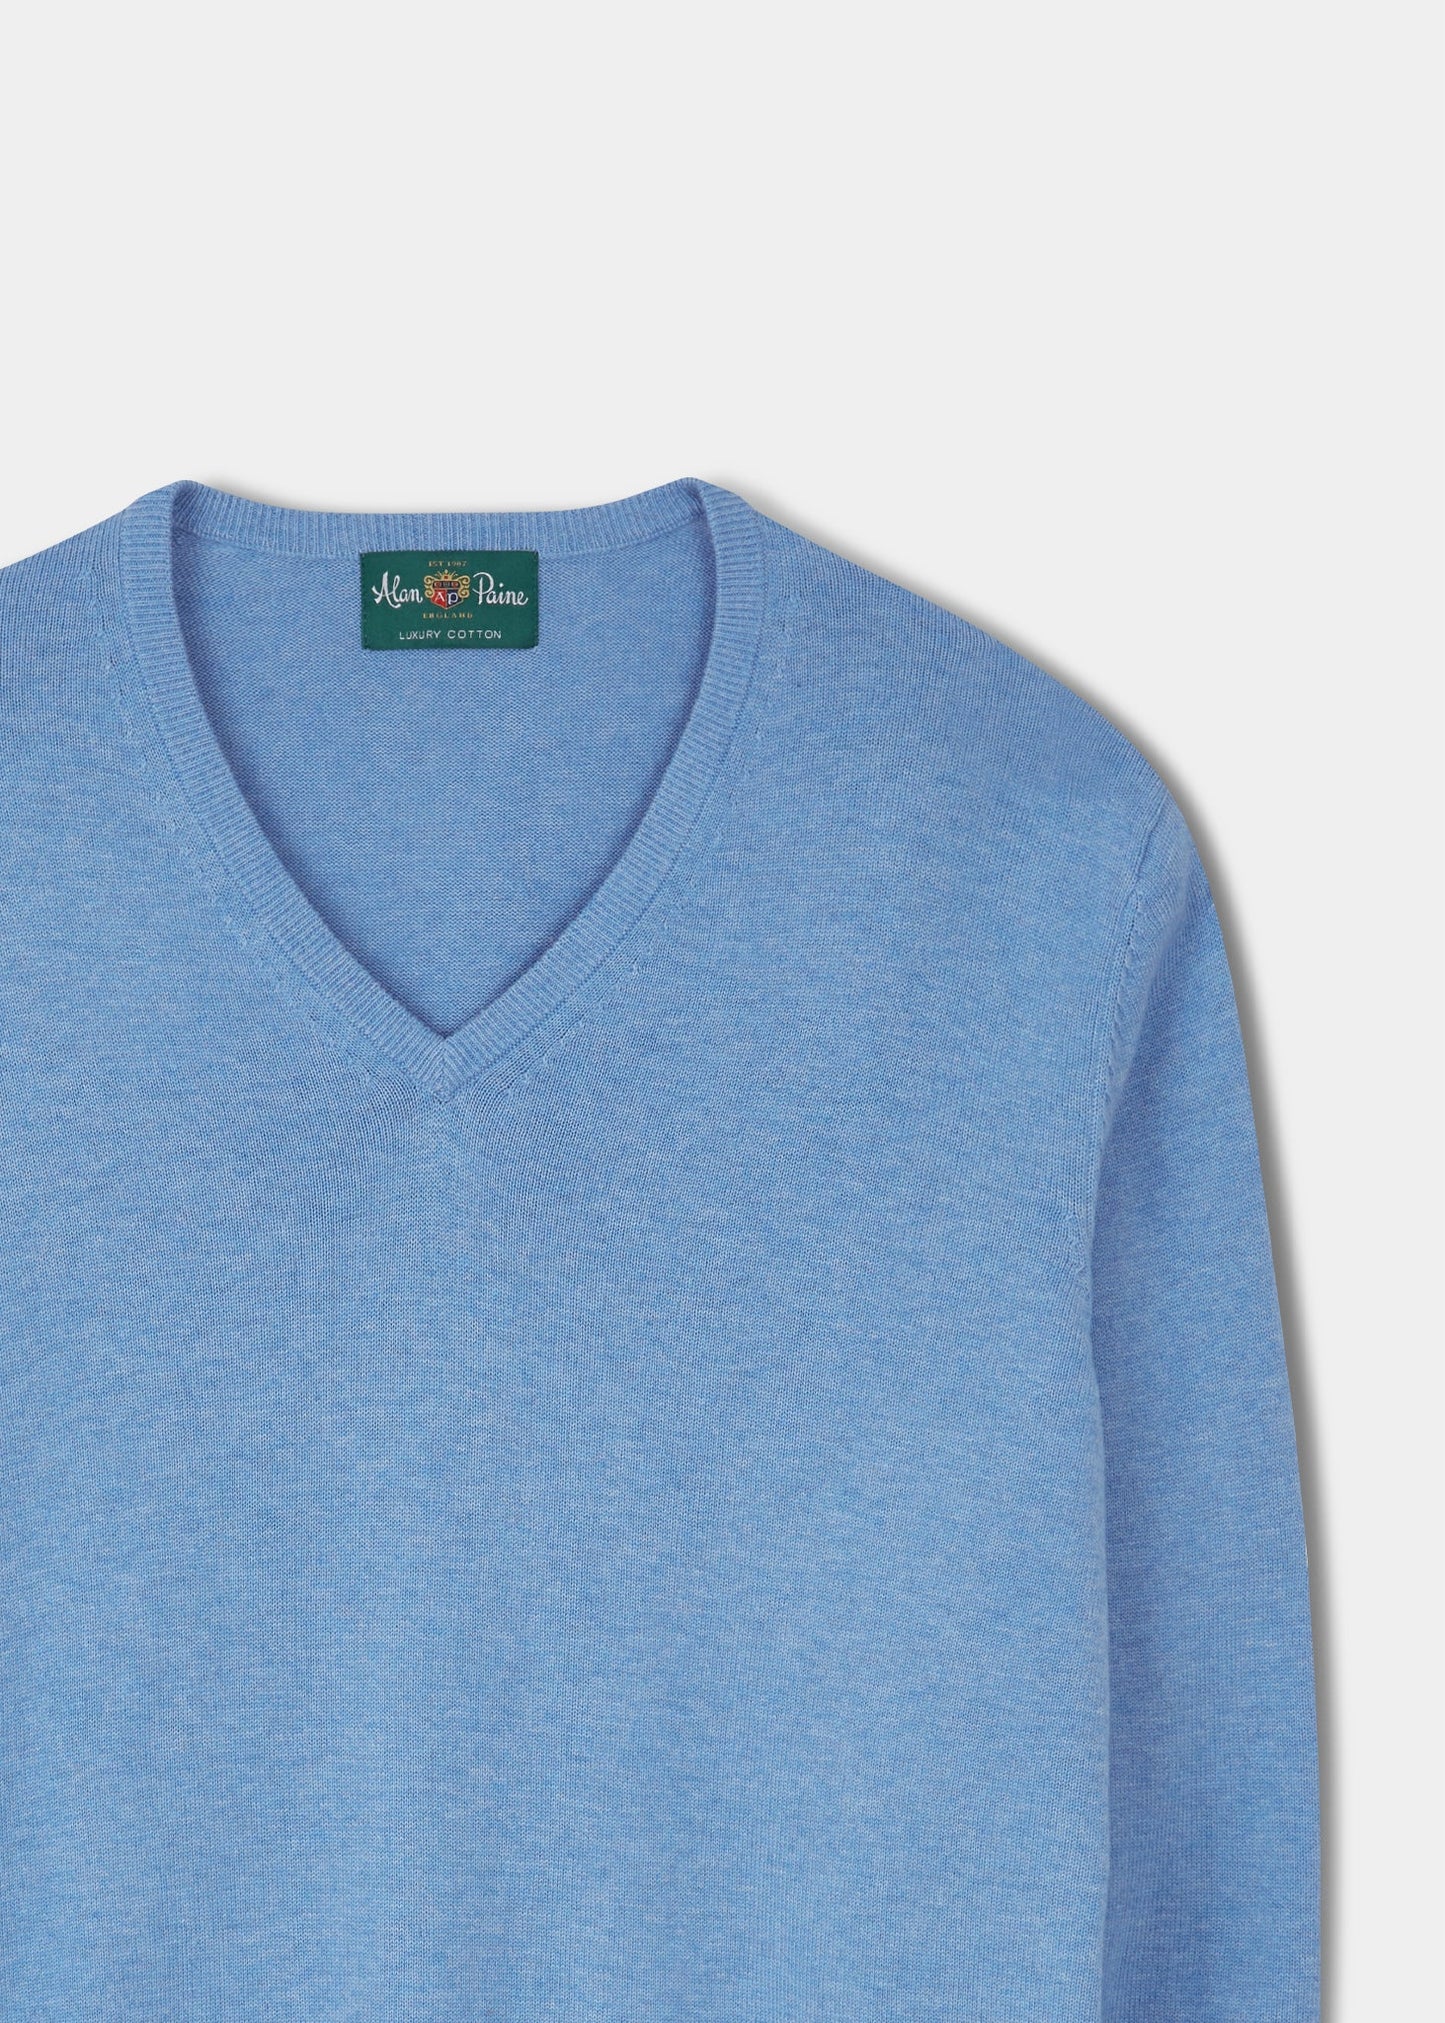 Alan Paine cotton cashmere v-neck jumper in carolina blue